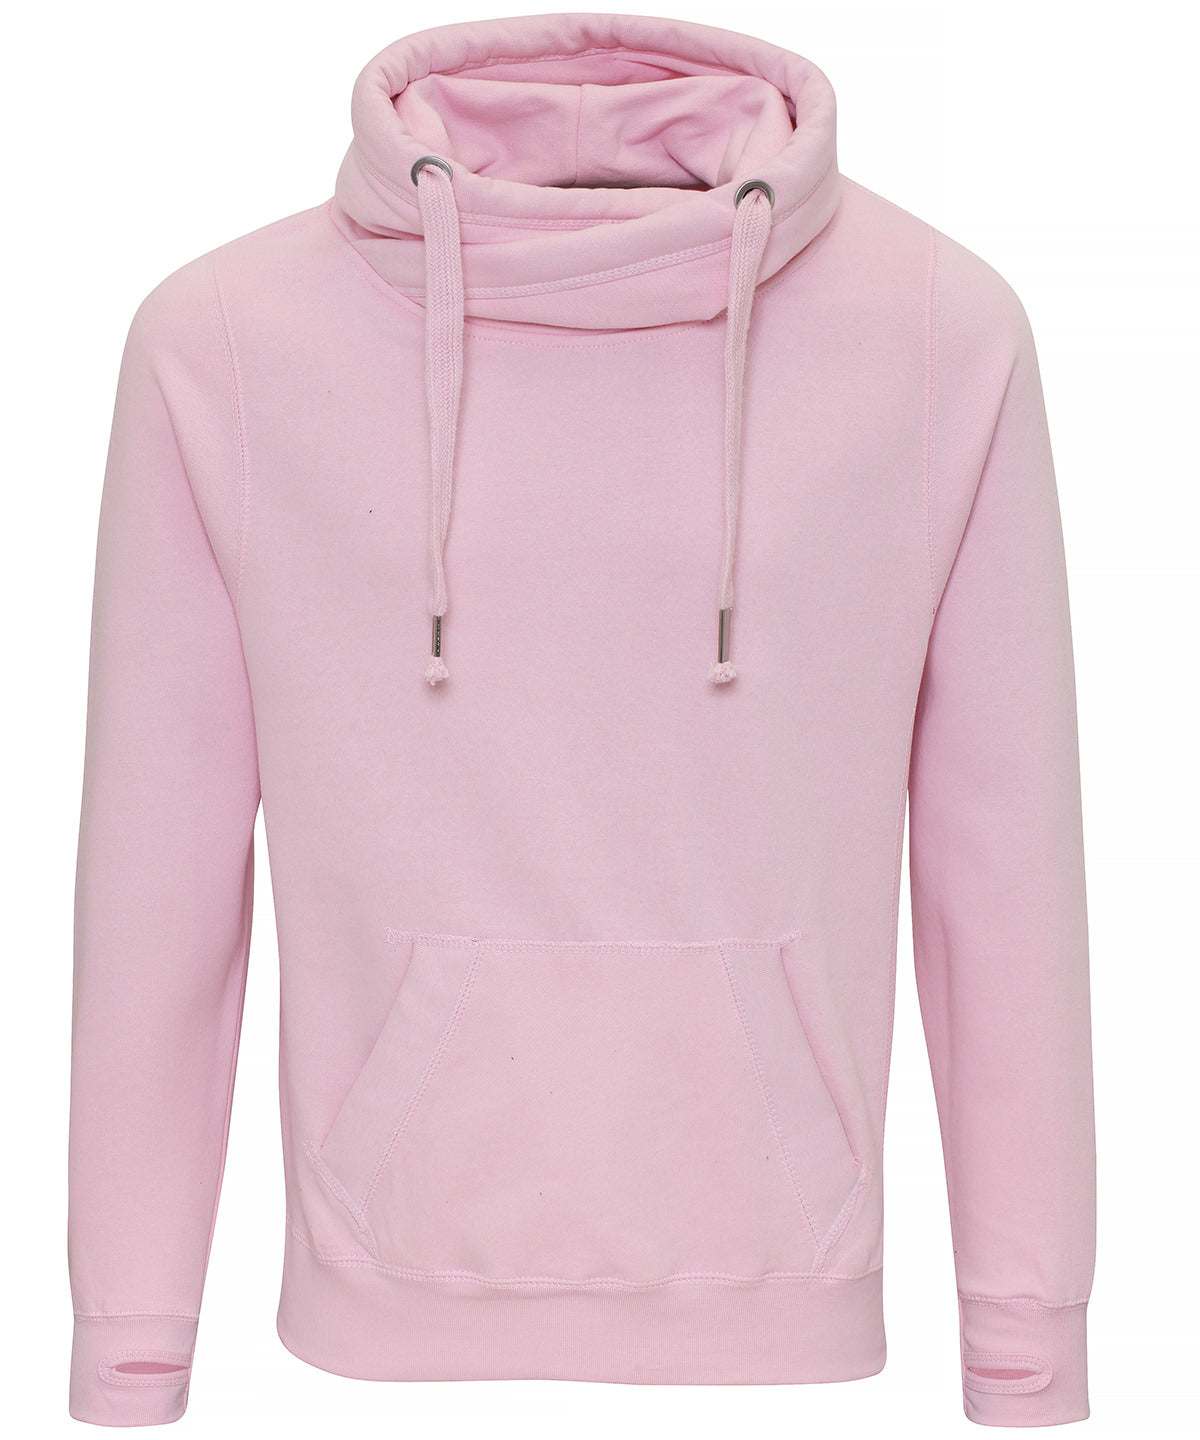 Personalised Hoodies - Light Pink AWDis Just Hoods Cross neck hoodie